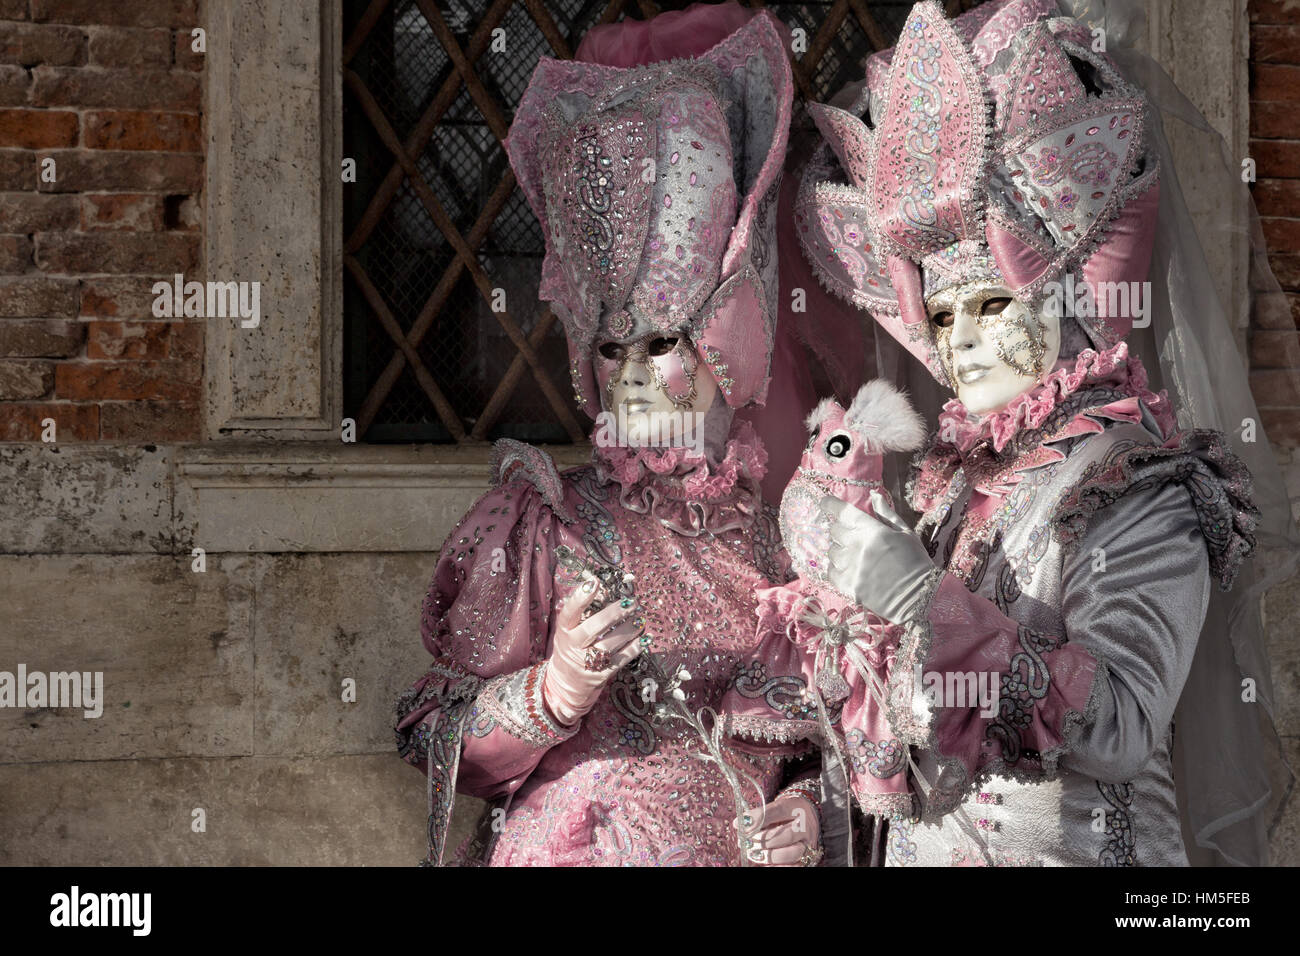 Venise - Feb 5, 2013 : les gens costumés sur la Piazza San Marco Venise pendant le carnaval. Banque D'Images